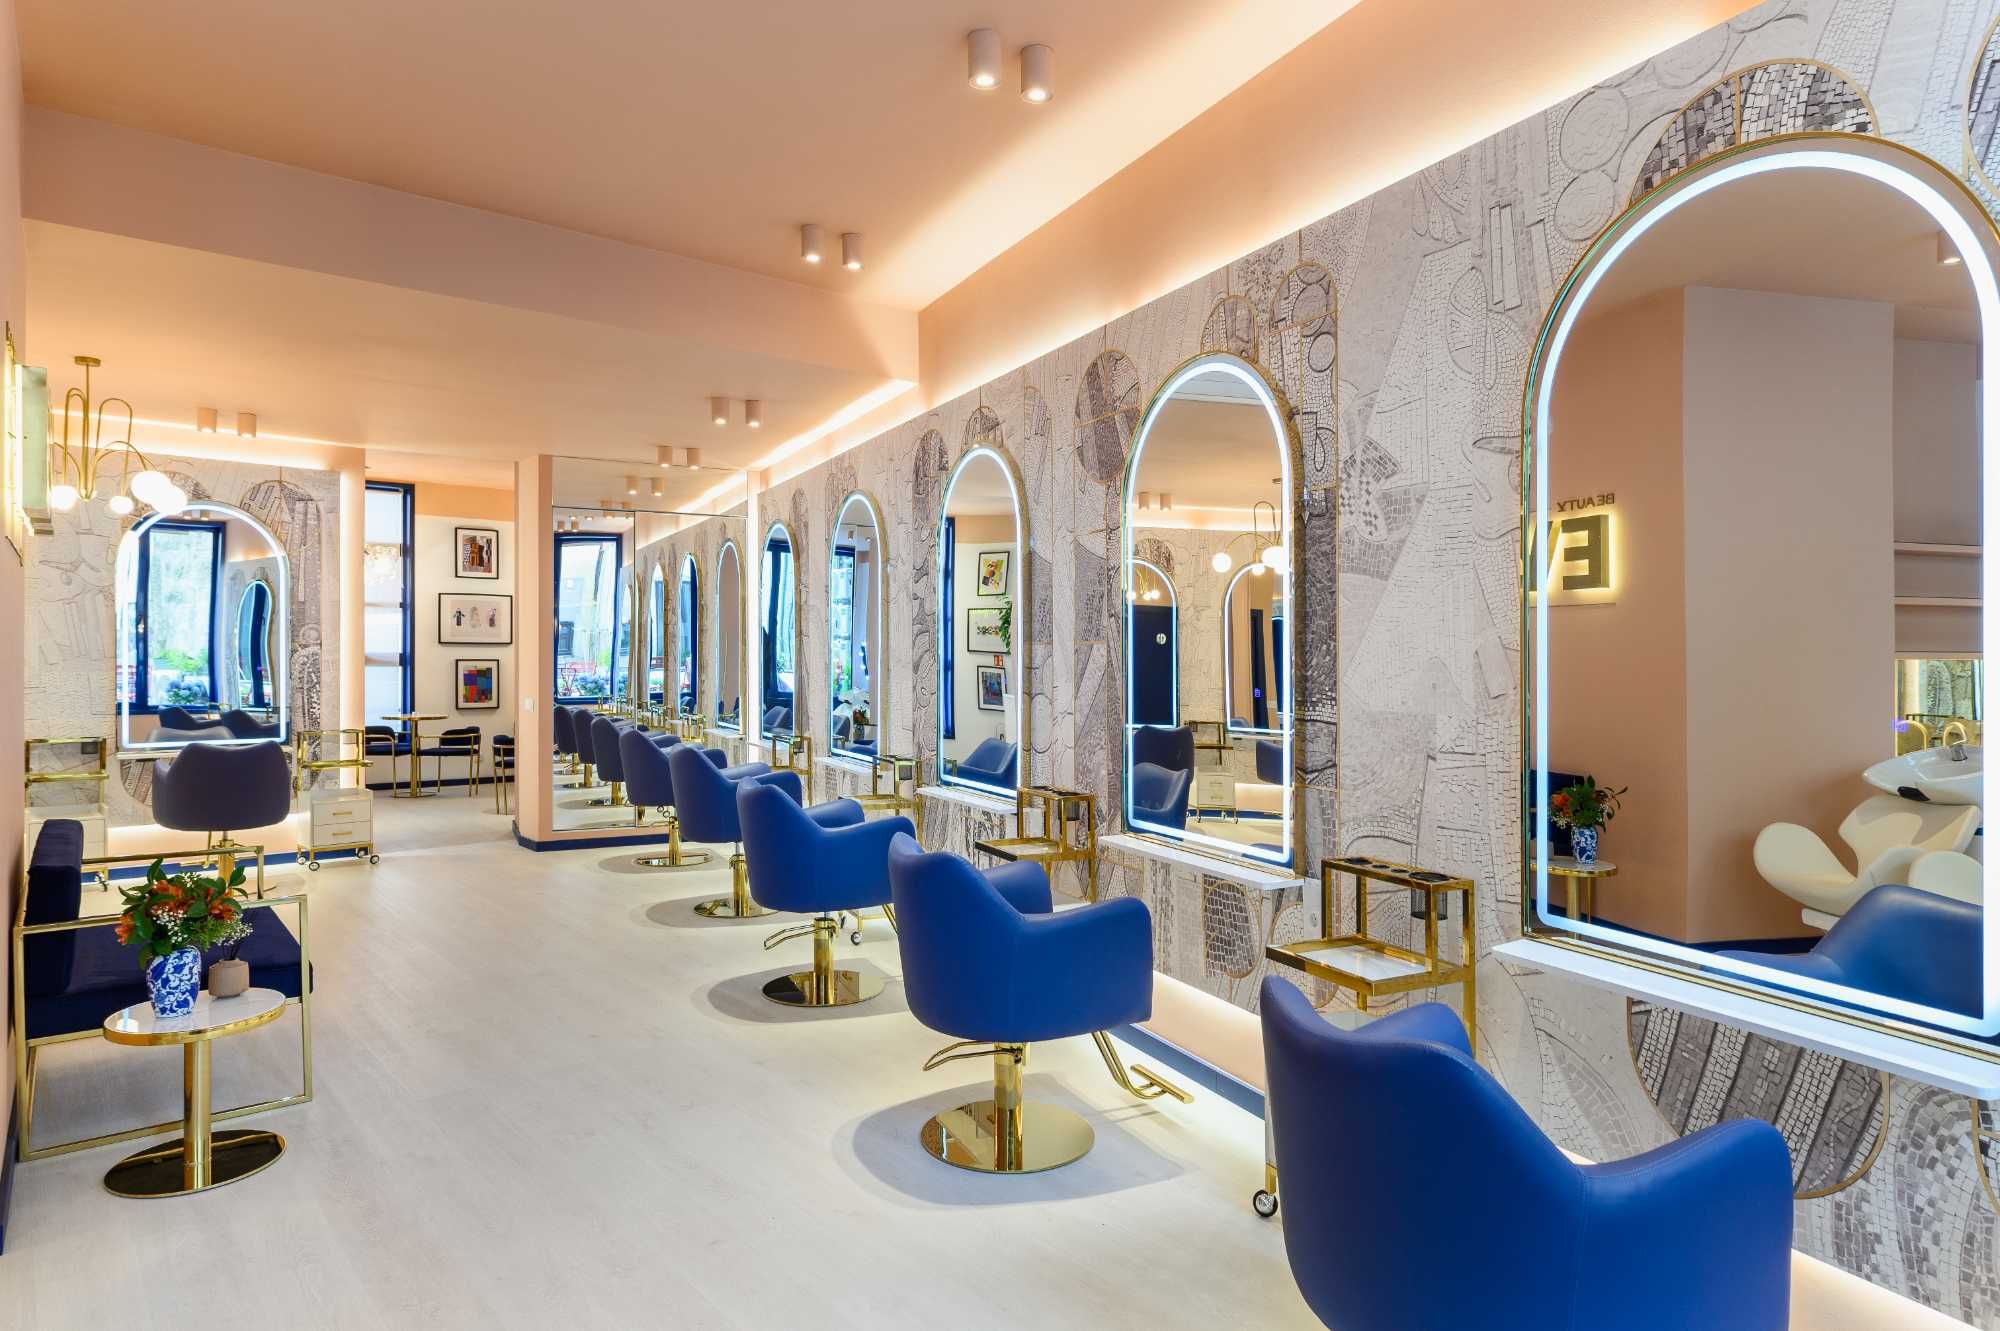 Alugamos espaço para cabeleireiros – apenas 29,90 euros por dia!